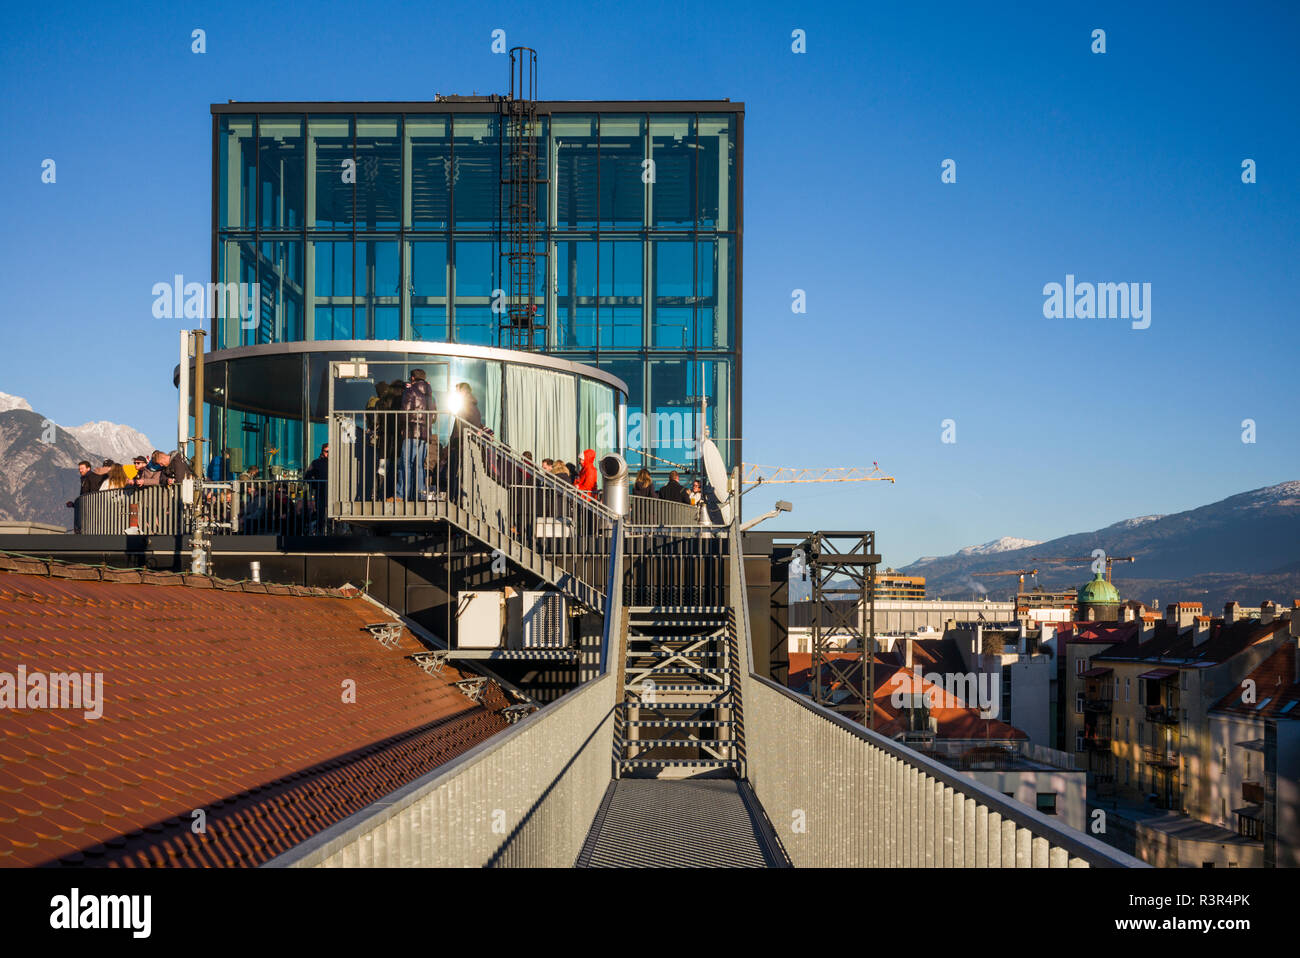 Austria, Tyrol, Innsbruck, RathausGalerien shopping center, outdoor 360 Cafe Stock Photo